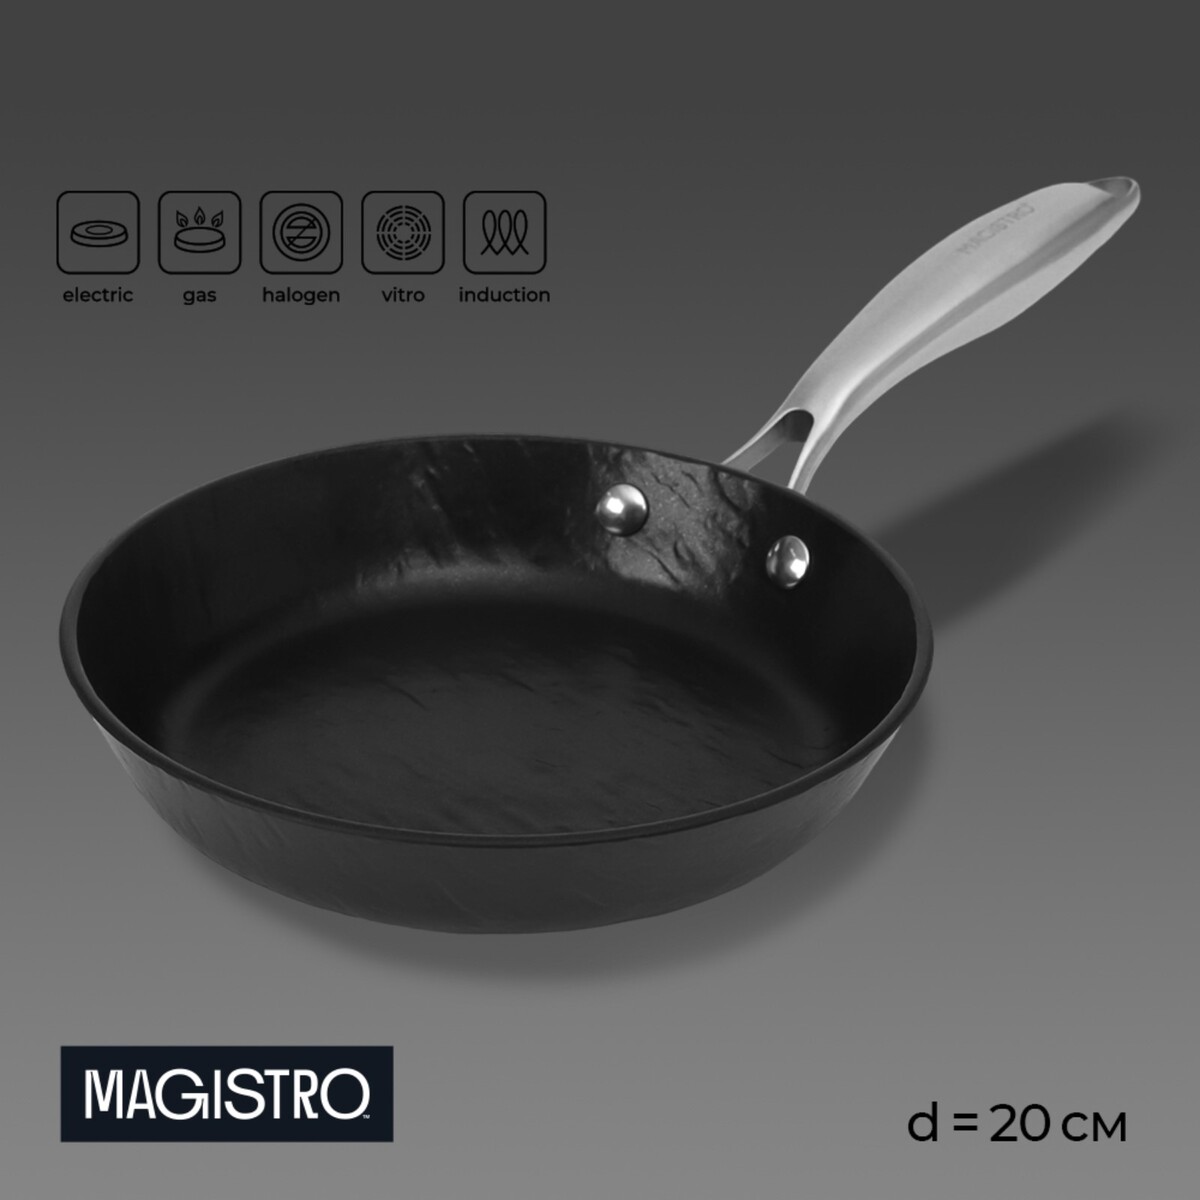 Сковорода magistro rock stone, d=20 см, h=4 см, антипригарное покрытие, индукция, цвет черный мыльница ridder stone бежевый